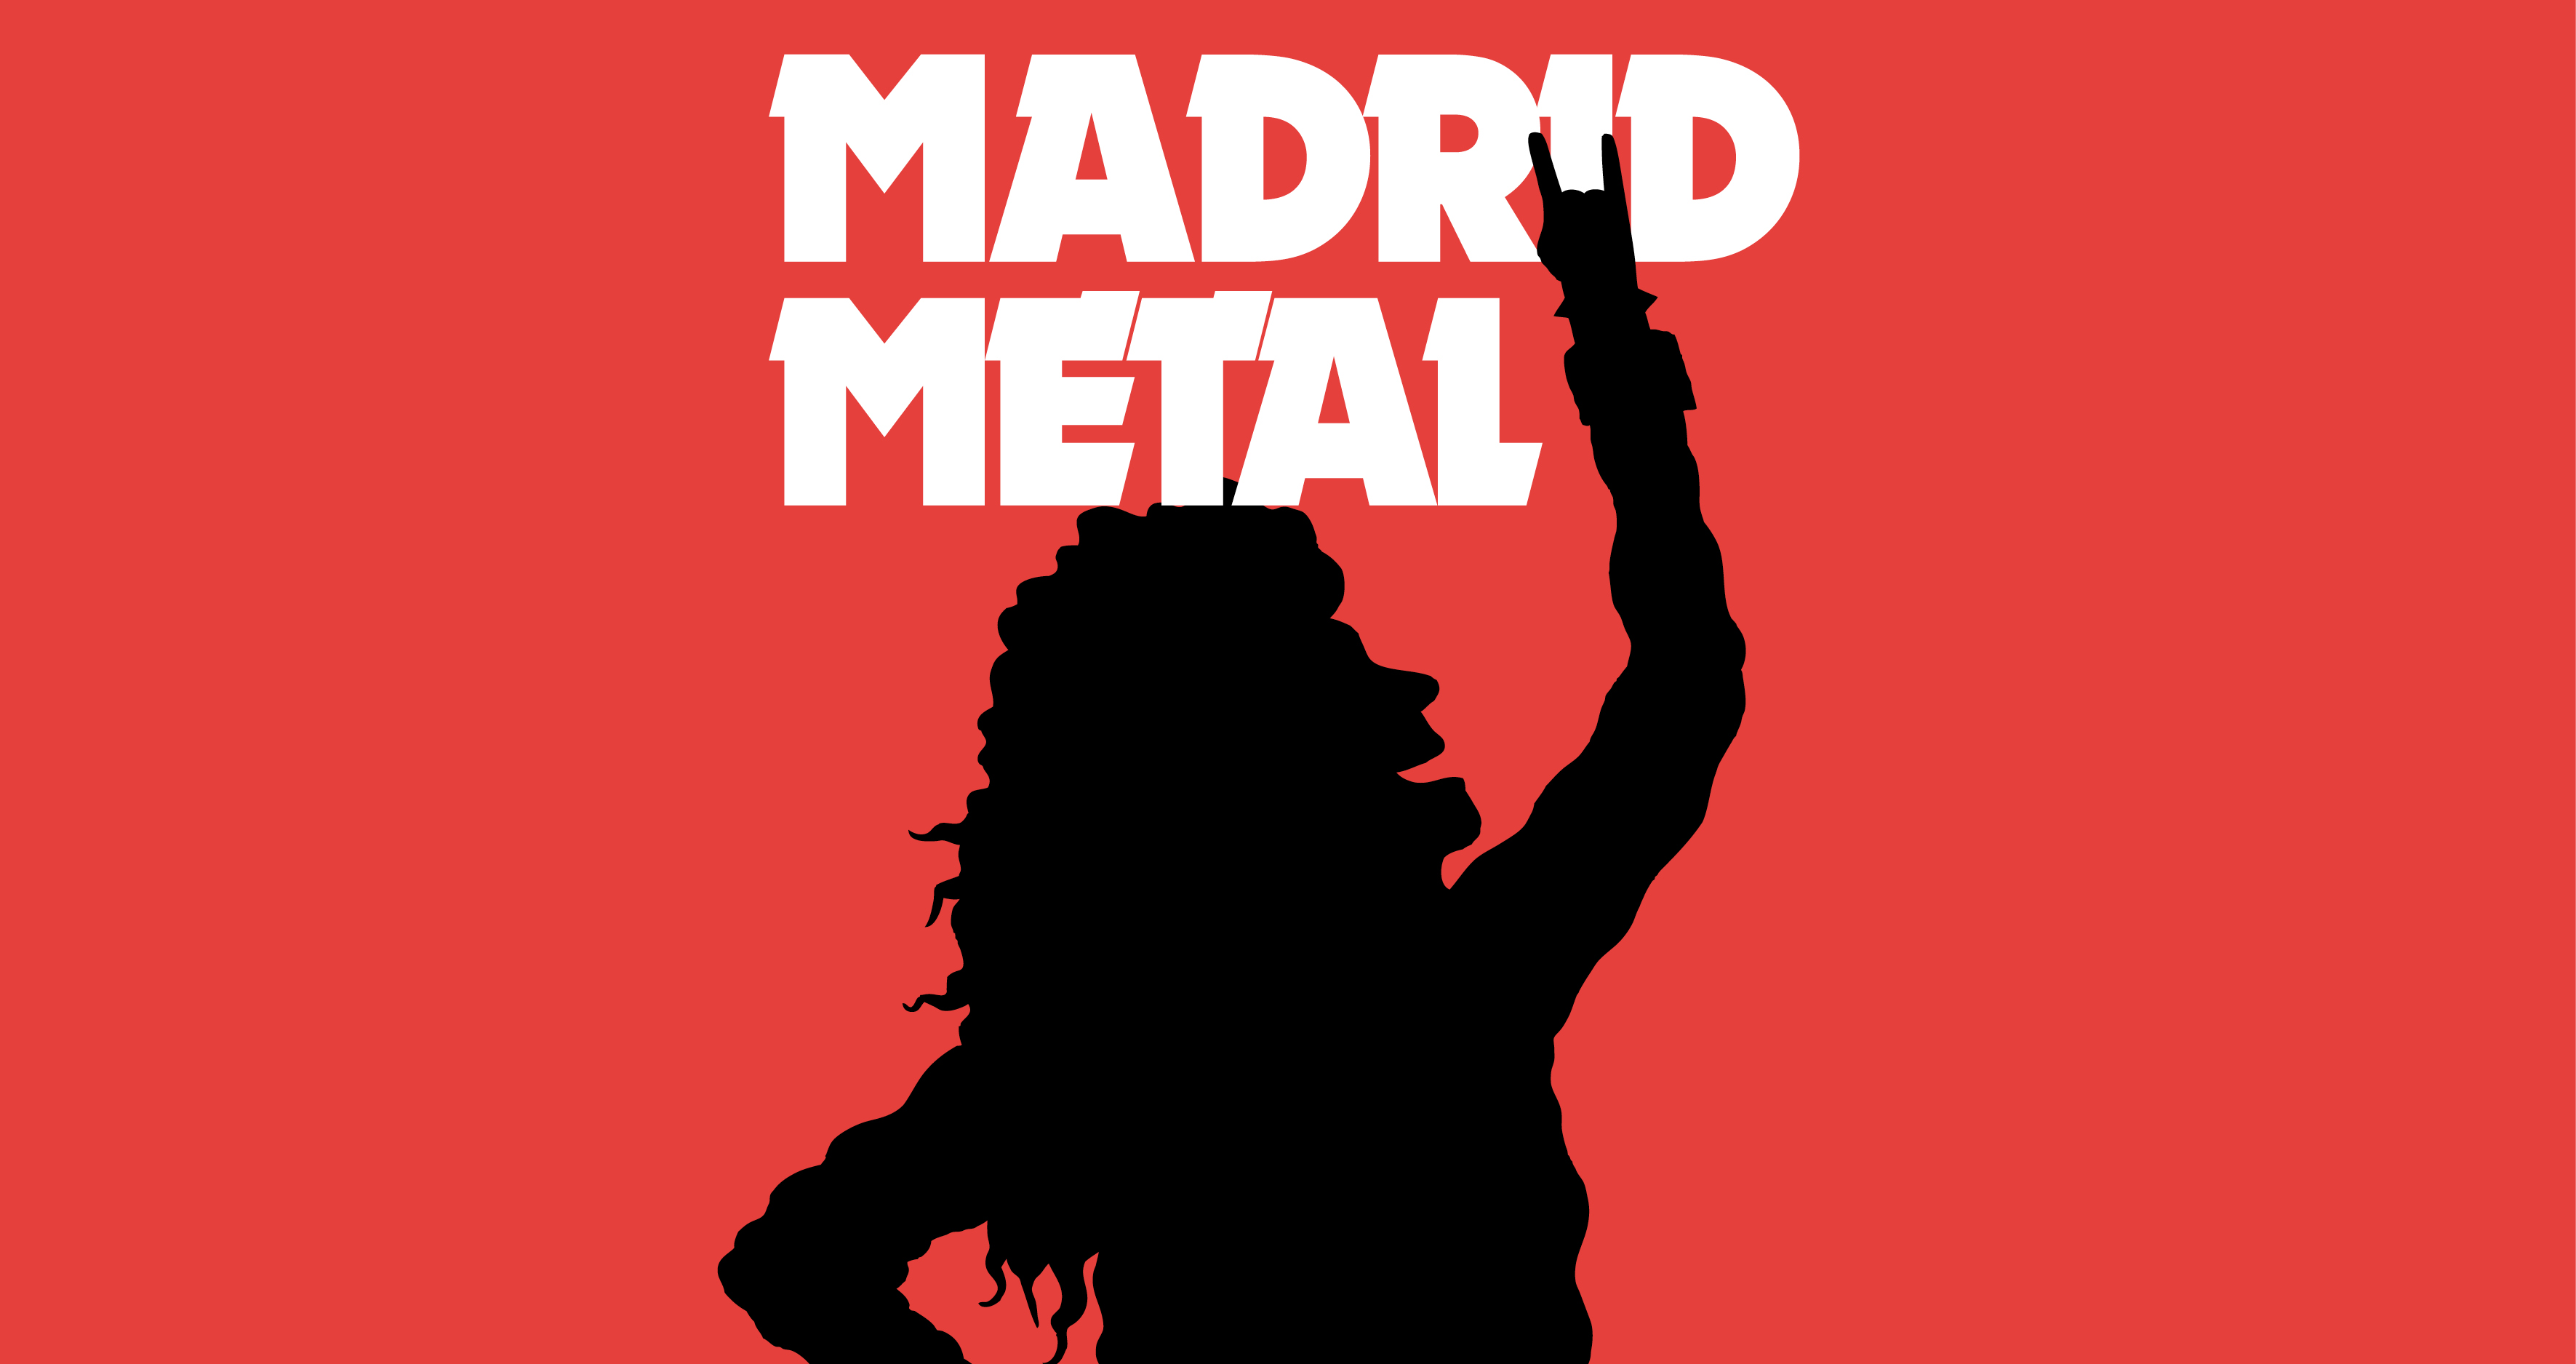 Madrid Metal, Centro Centro